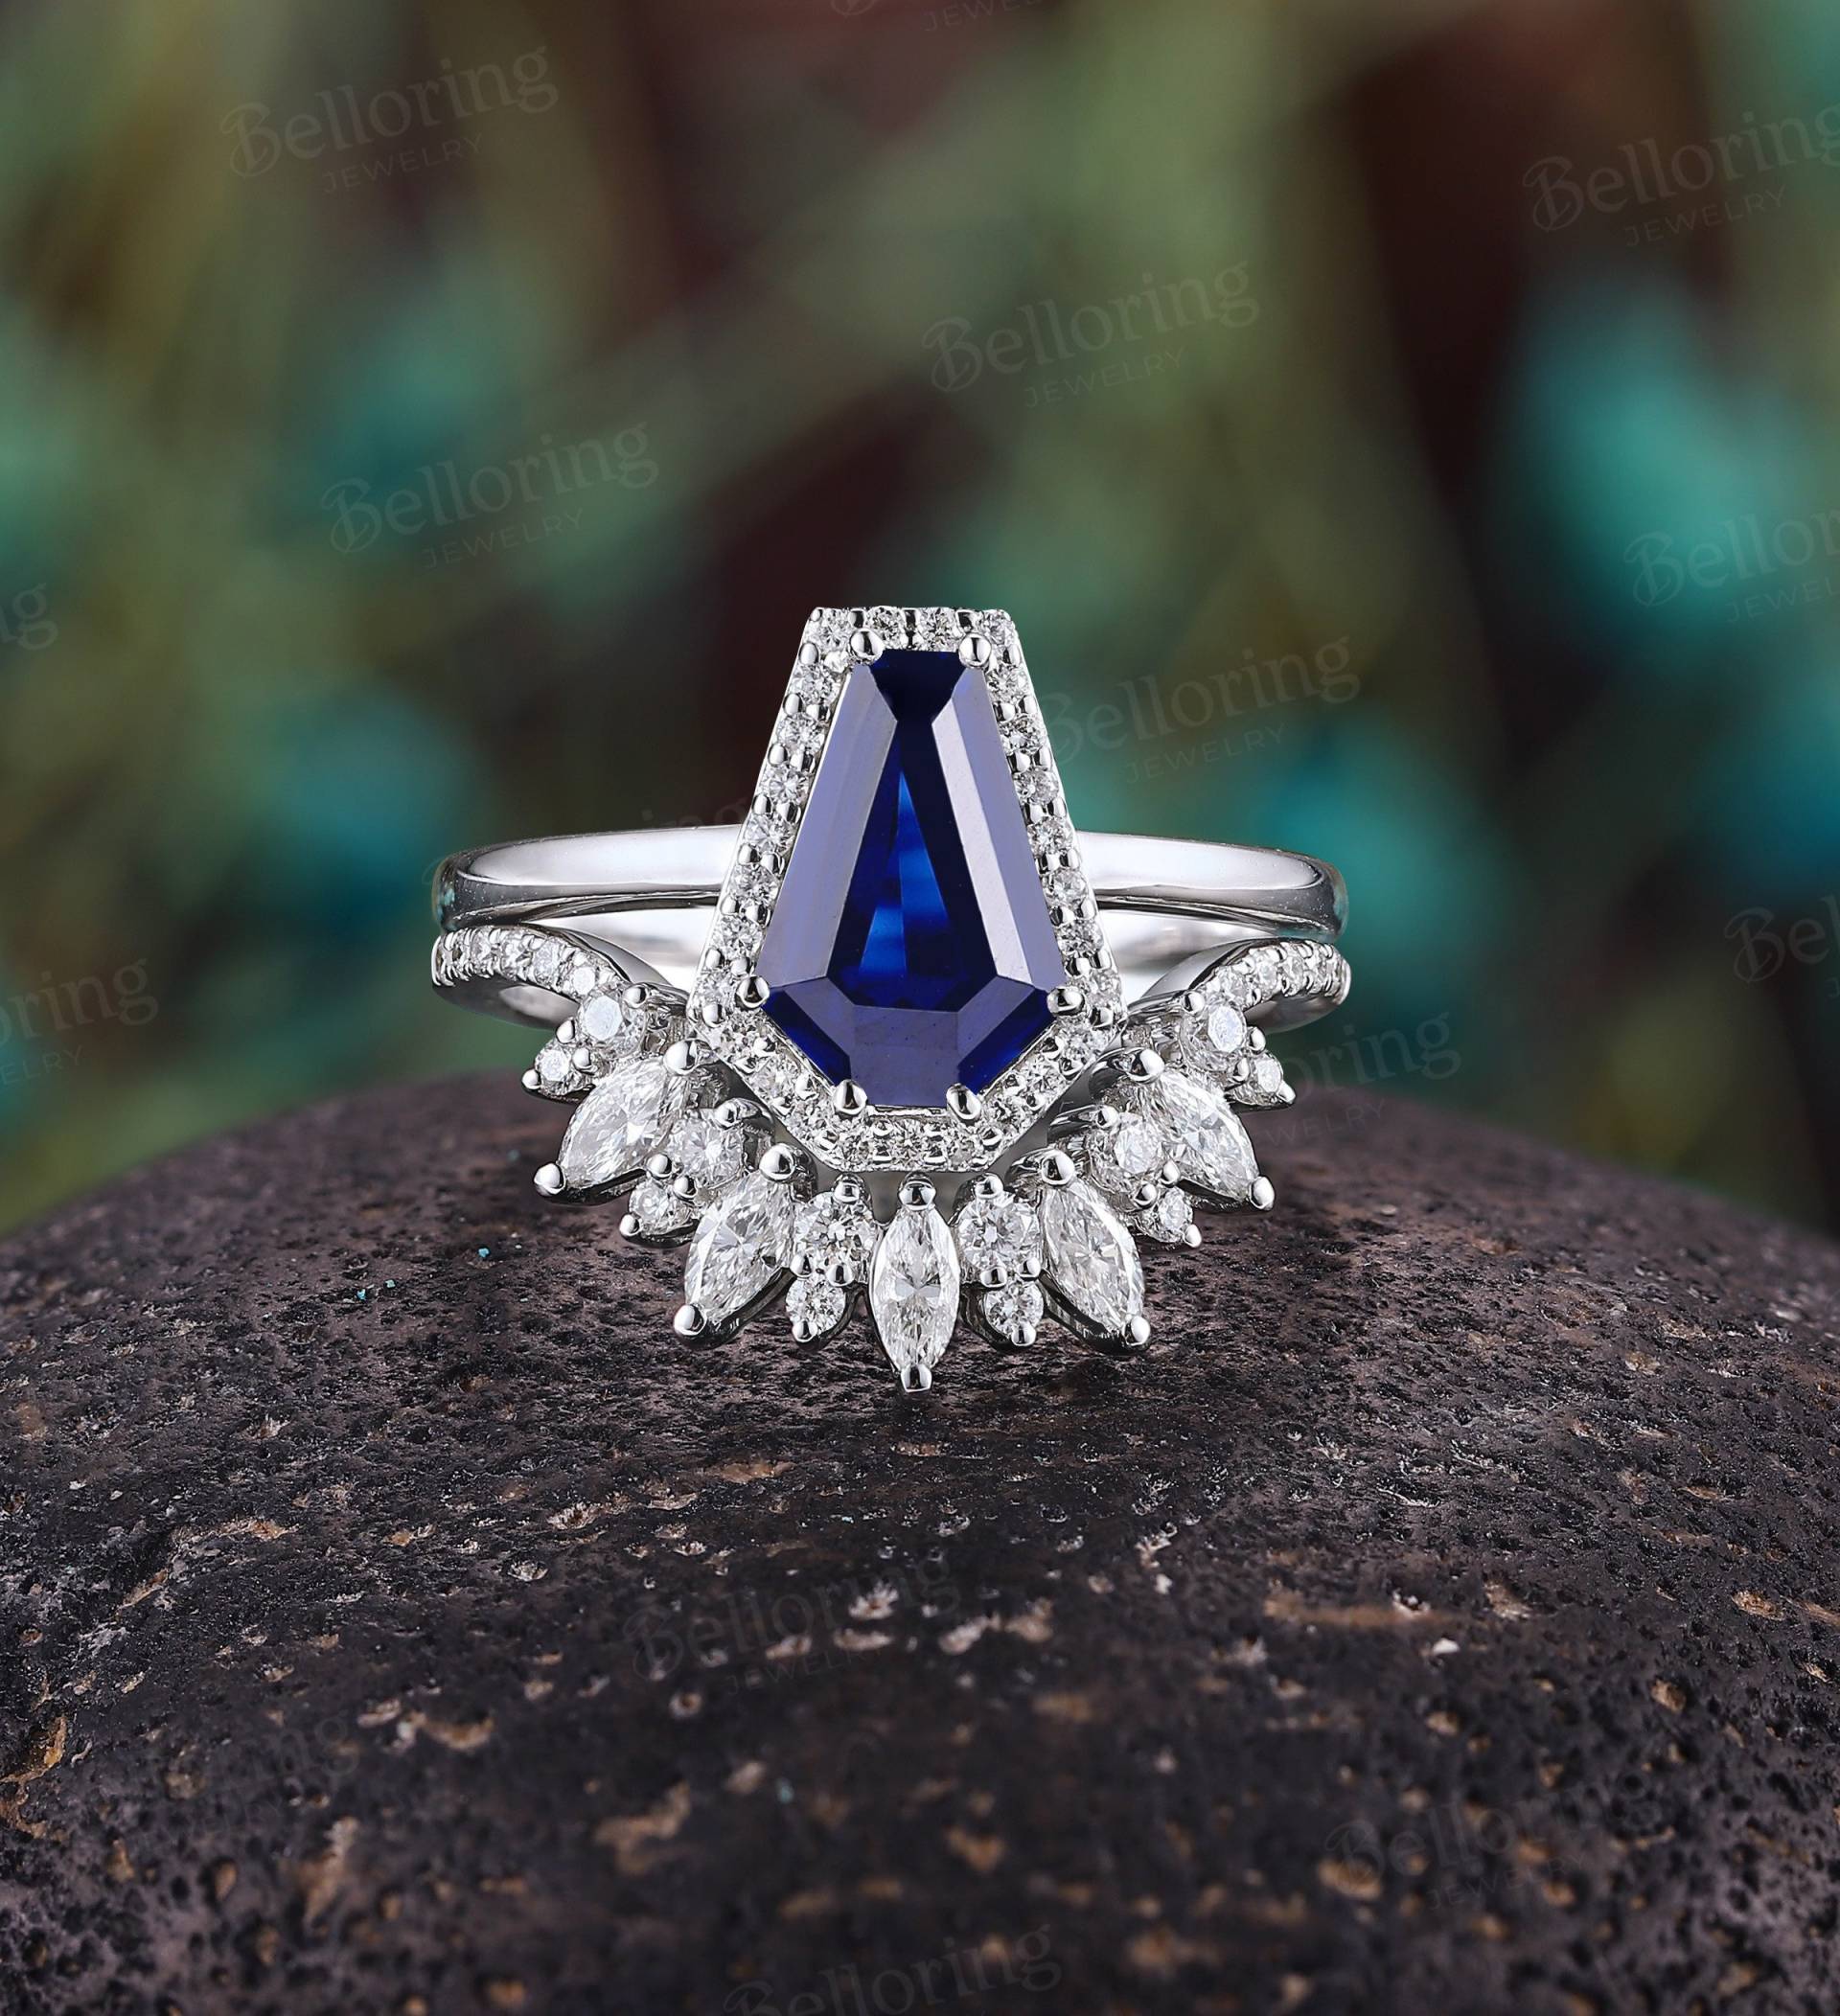 Vintage Sarg Saphir Verlobungsring Set Art Deco Diamant Halo Brautset Marquiseschliff Moissanit Ring Weißgold Jubiläumsring von Belloring